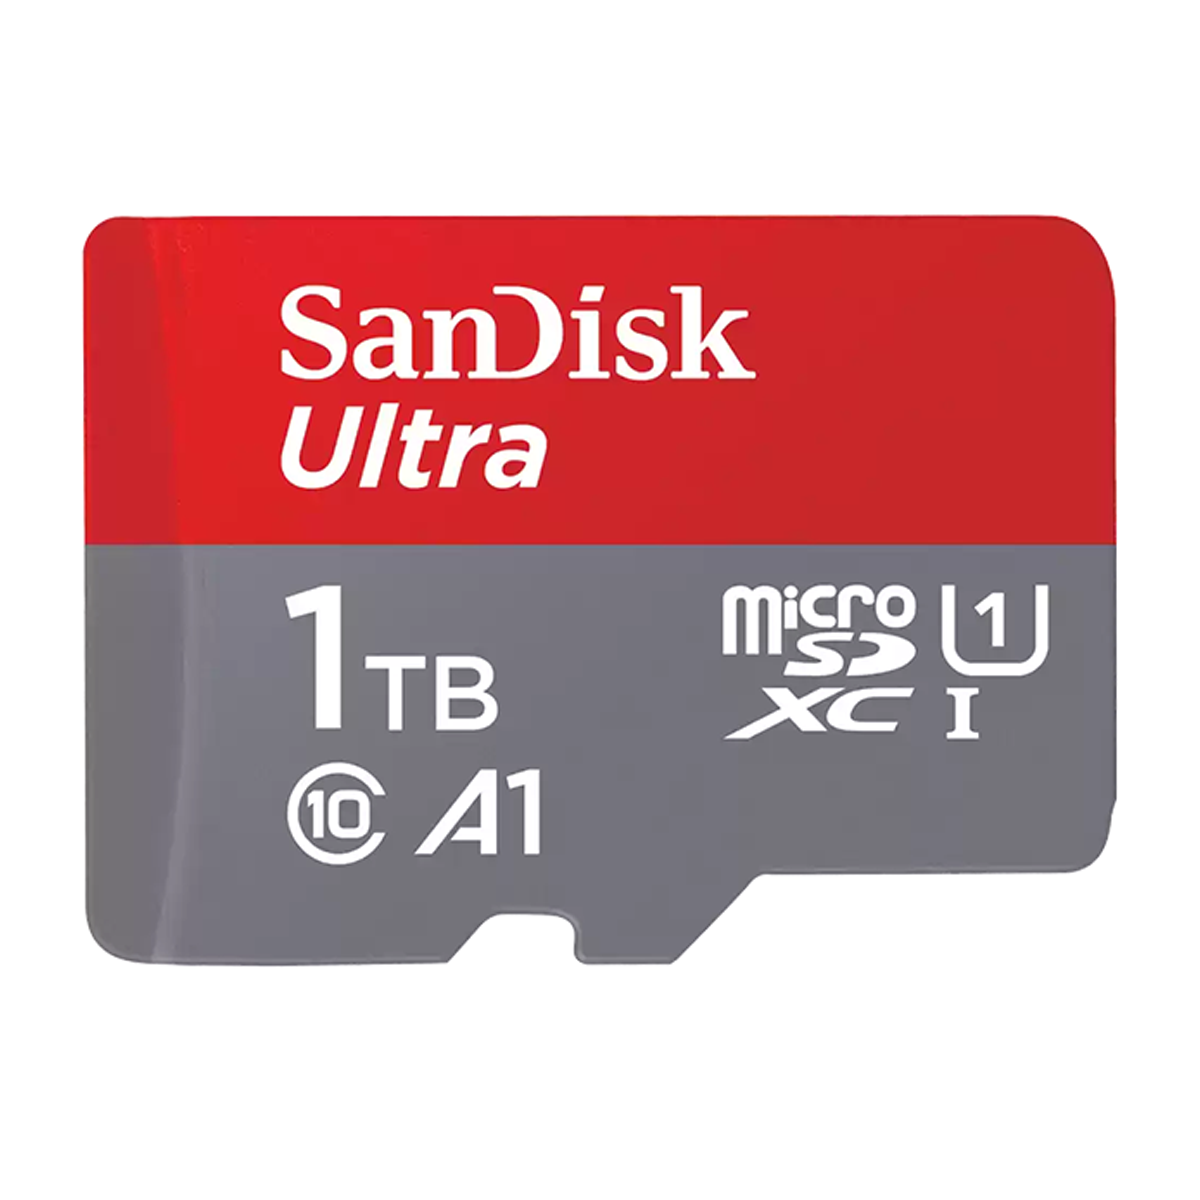 کارت حافظه microSDXC سن دیسک مدل Ultra A1 کلاس 10 استاندارد UHS-I سرعت 150MBps ظرفیت 1 ترابایت